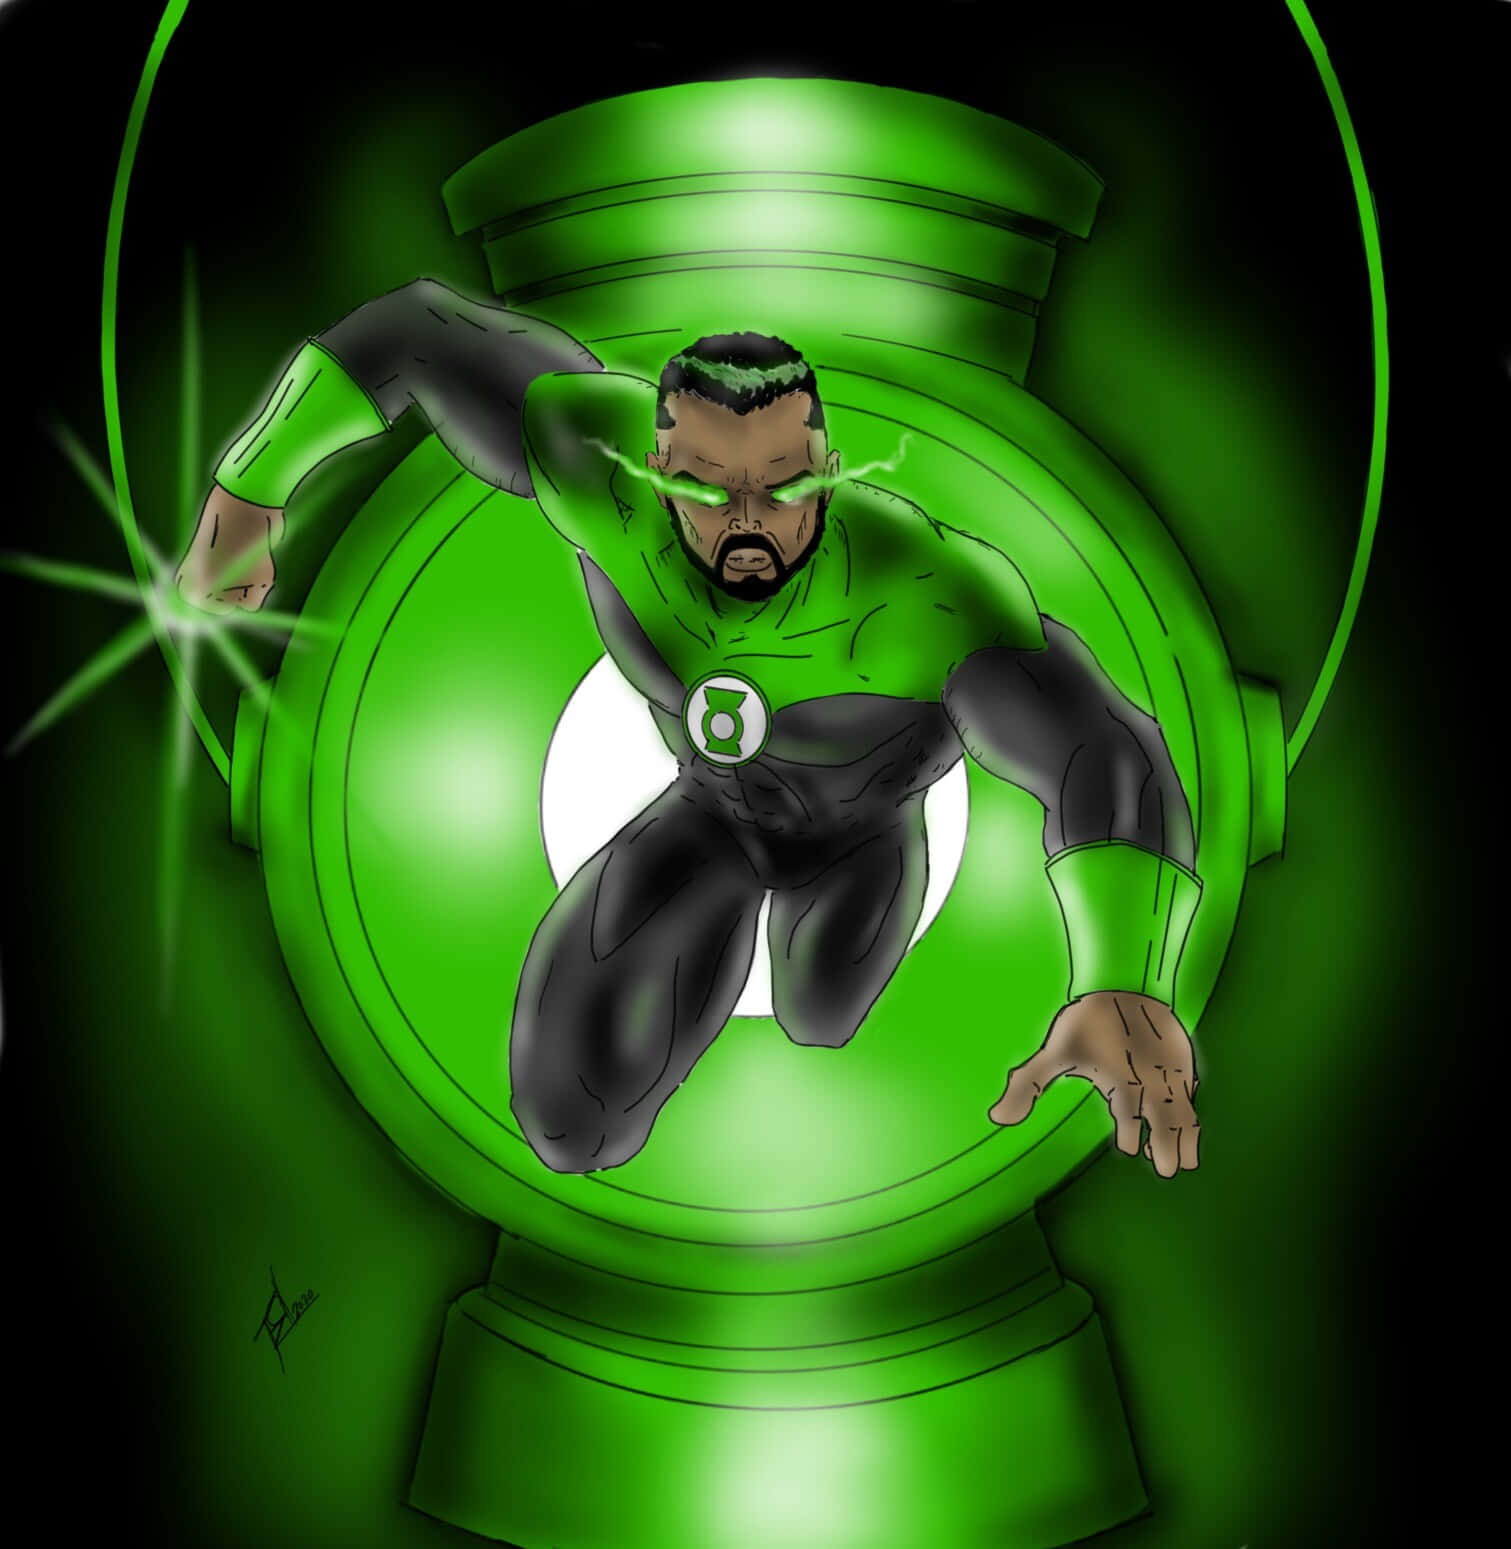 Einmitglied Des Green Lantern Corps, Das Einen Mächtigen Energie-ring Schwingt.